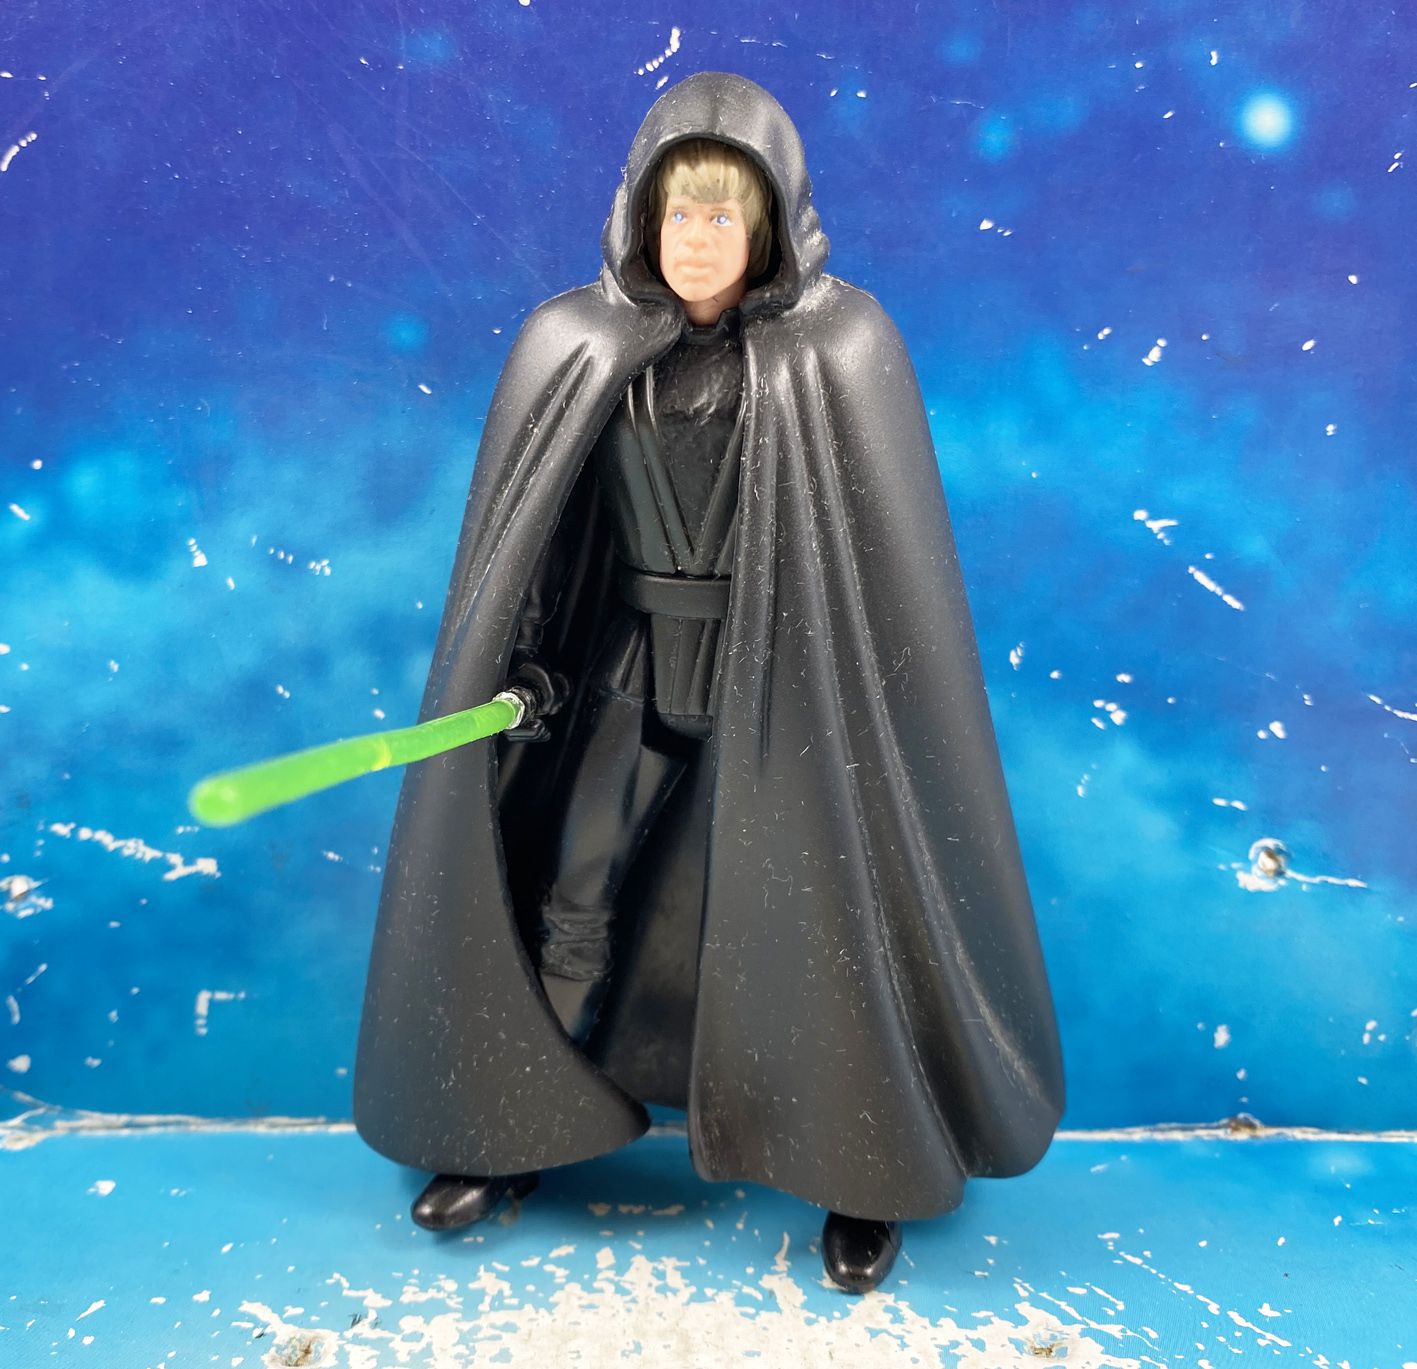 Star Wars Potf2 Deluxe Luke Skywalker Figure Hasbro 96119 for sale online 